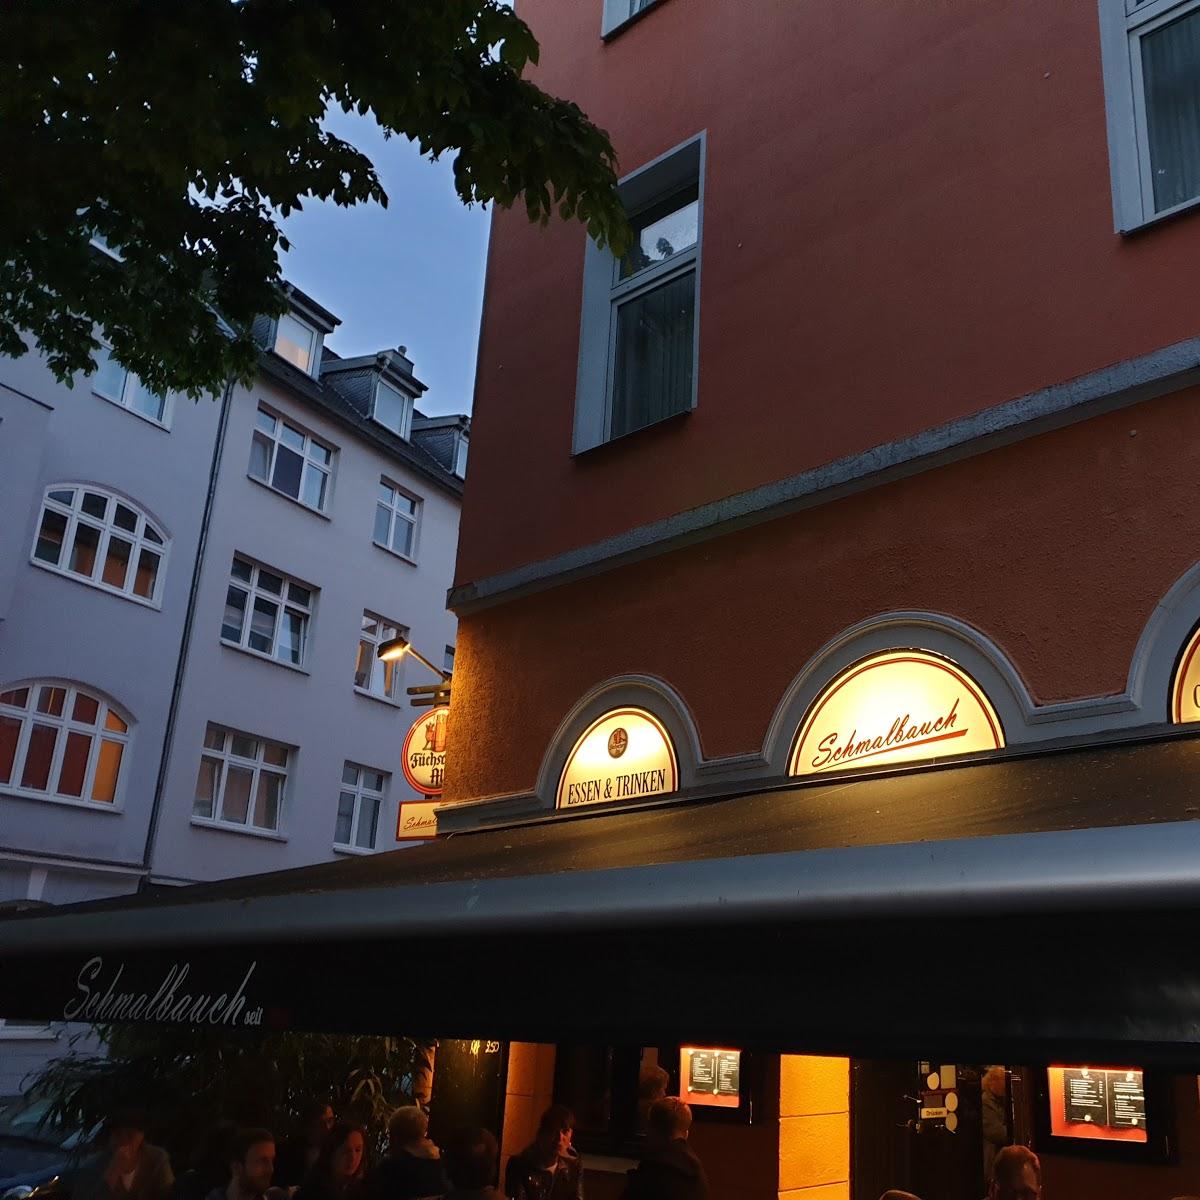 Restaurant "Schmalbauch" in Düsseldorf